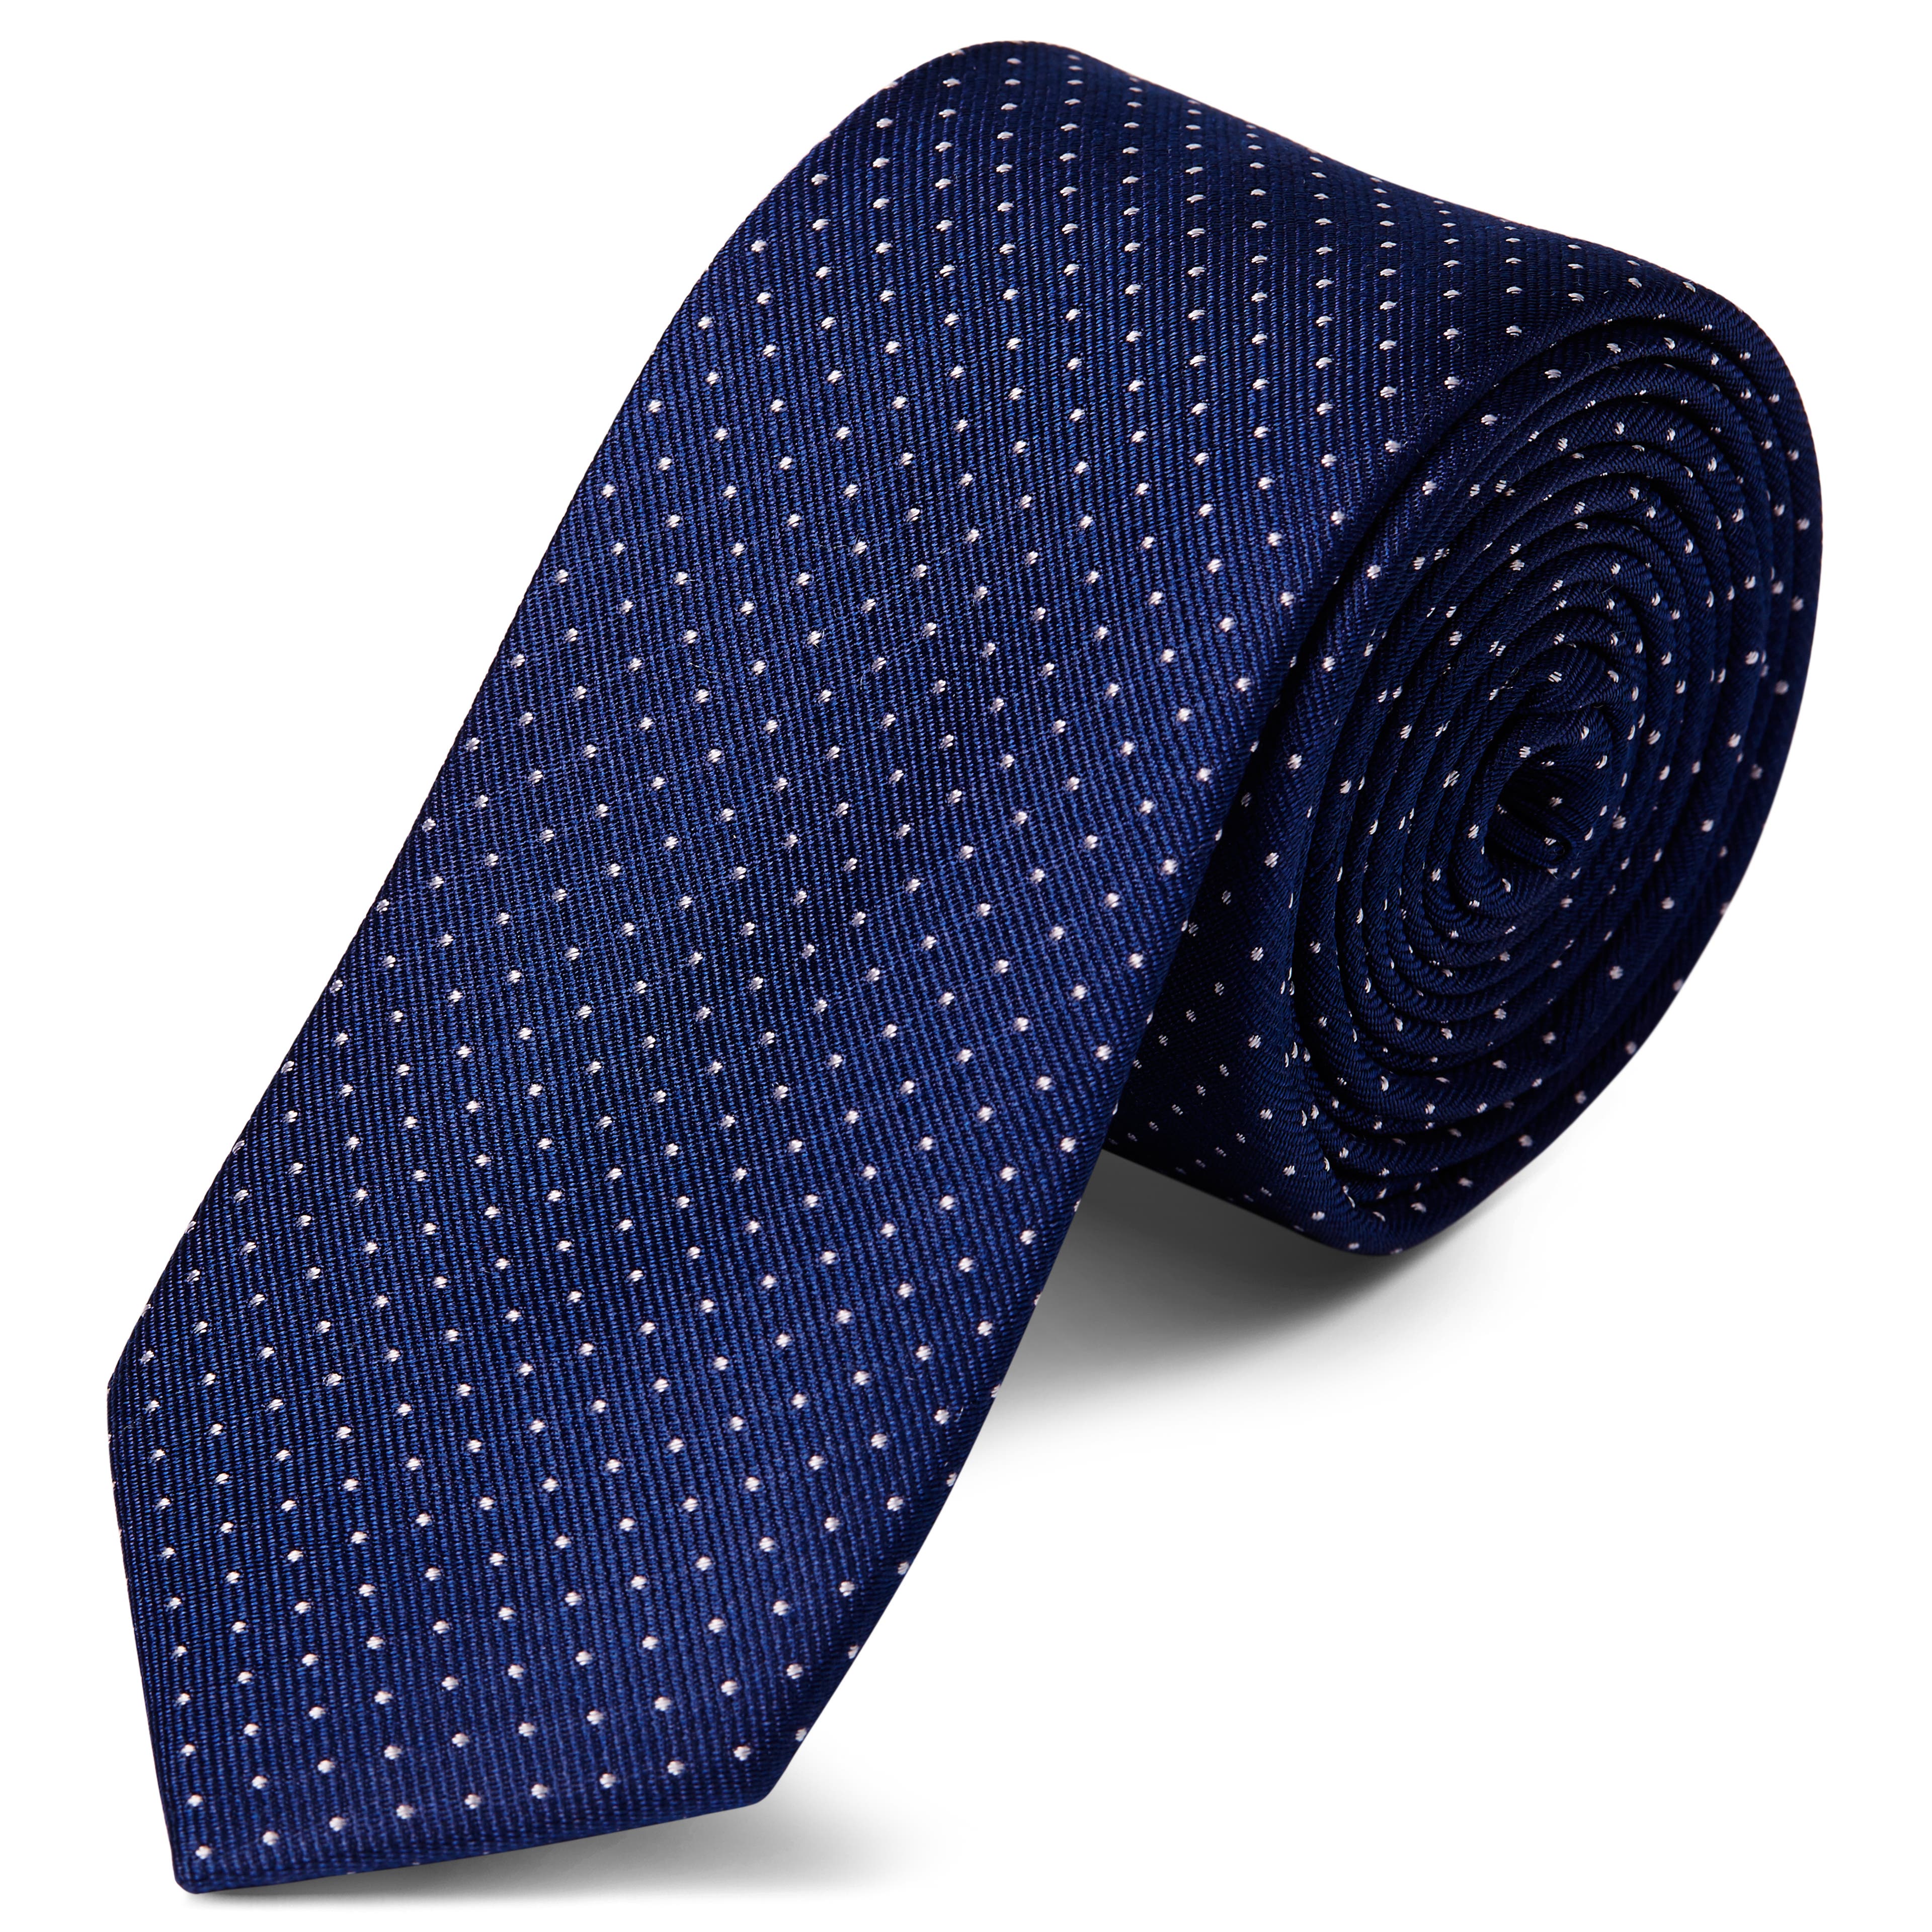 Tengerészkék selyem nyakkendő fehér pöttyös mintával - 6 cm